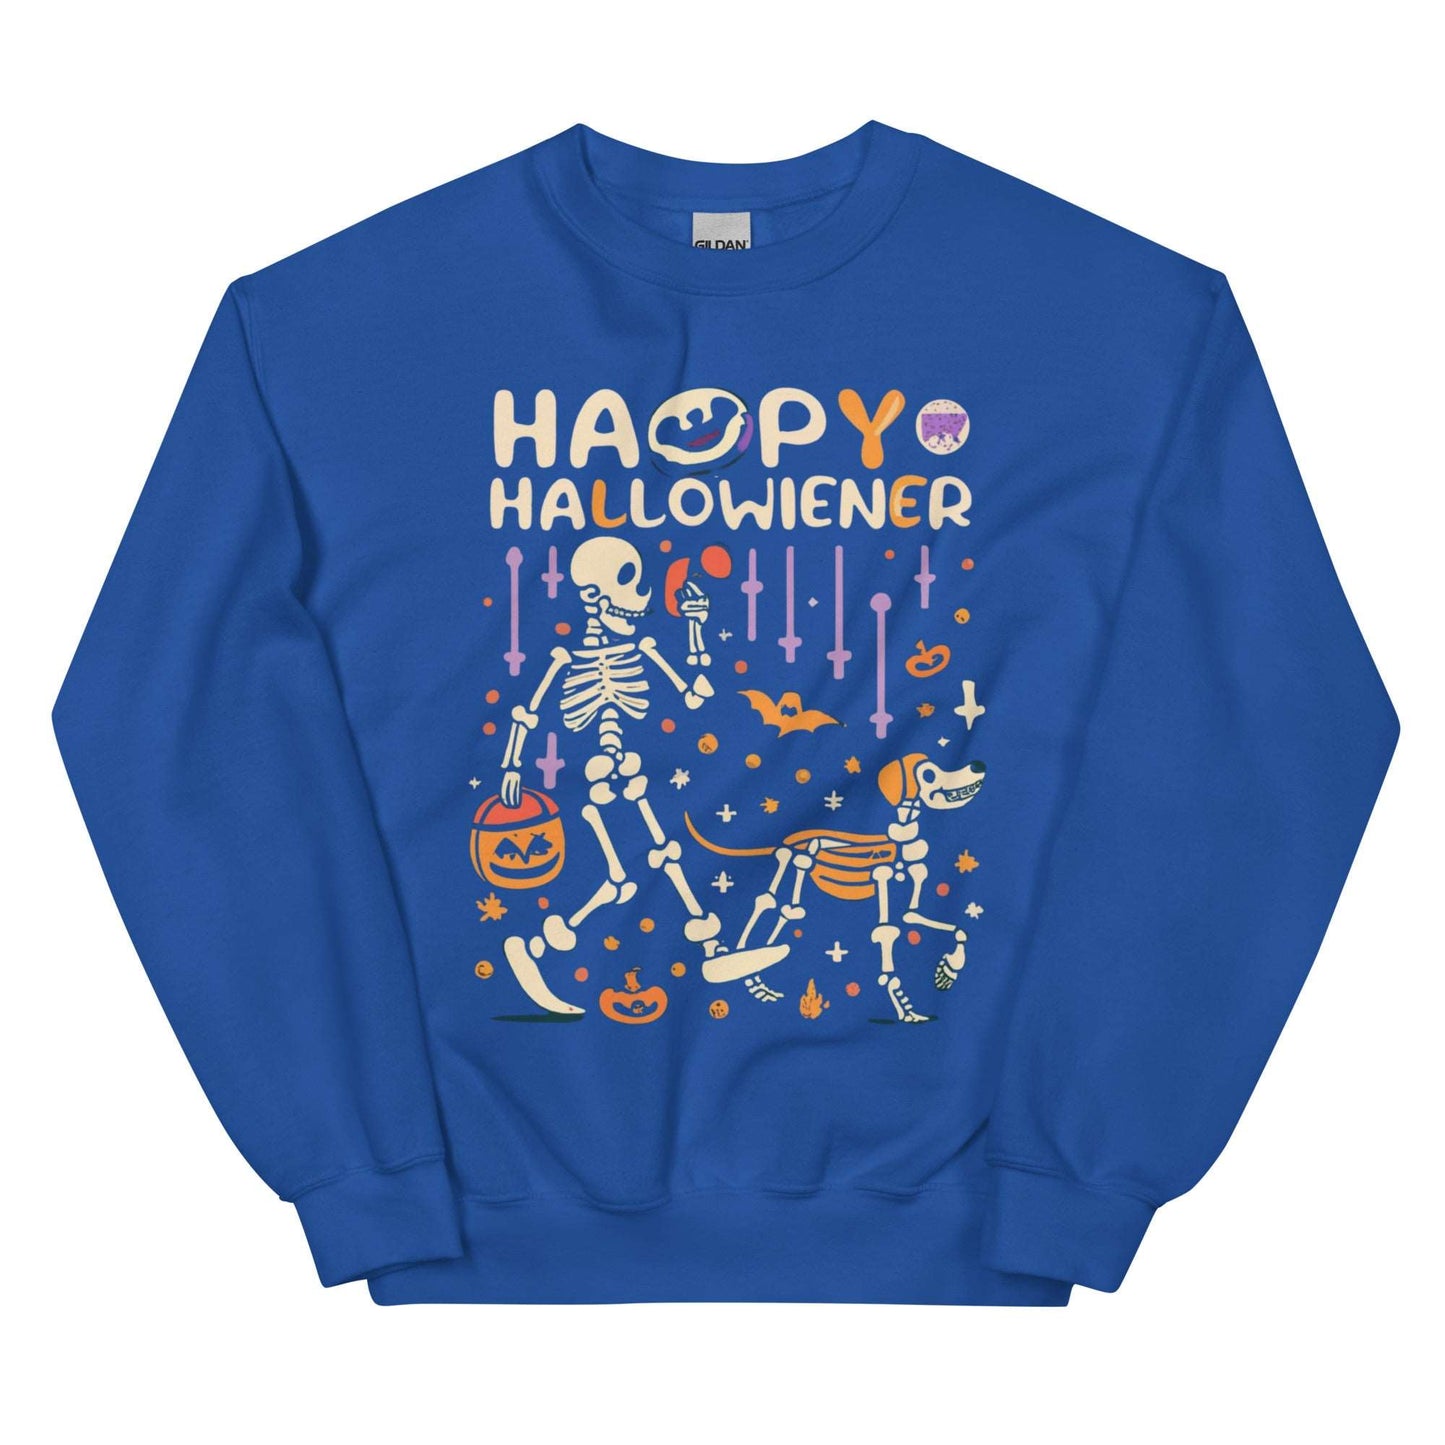 HAPPY HALLOWIENER - Unisex Sweatshirt